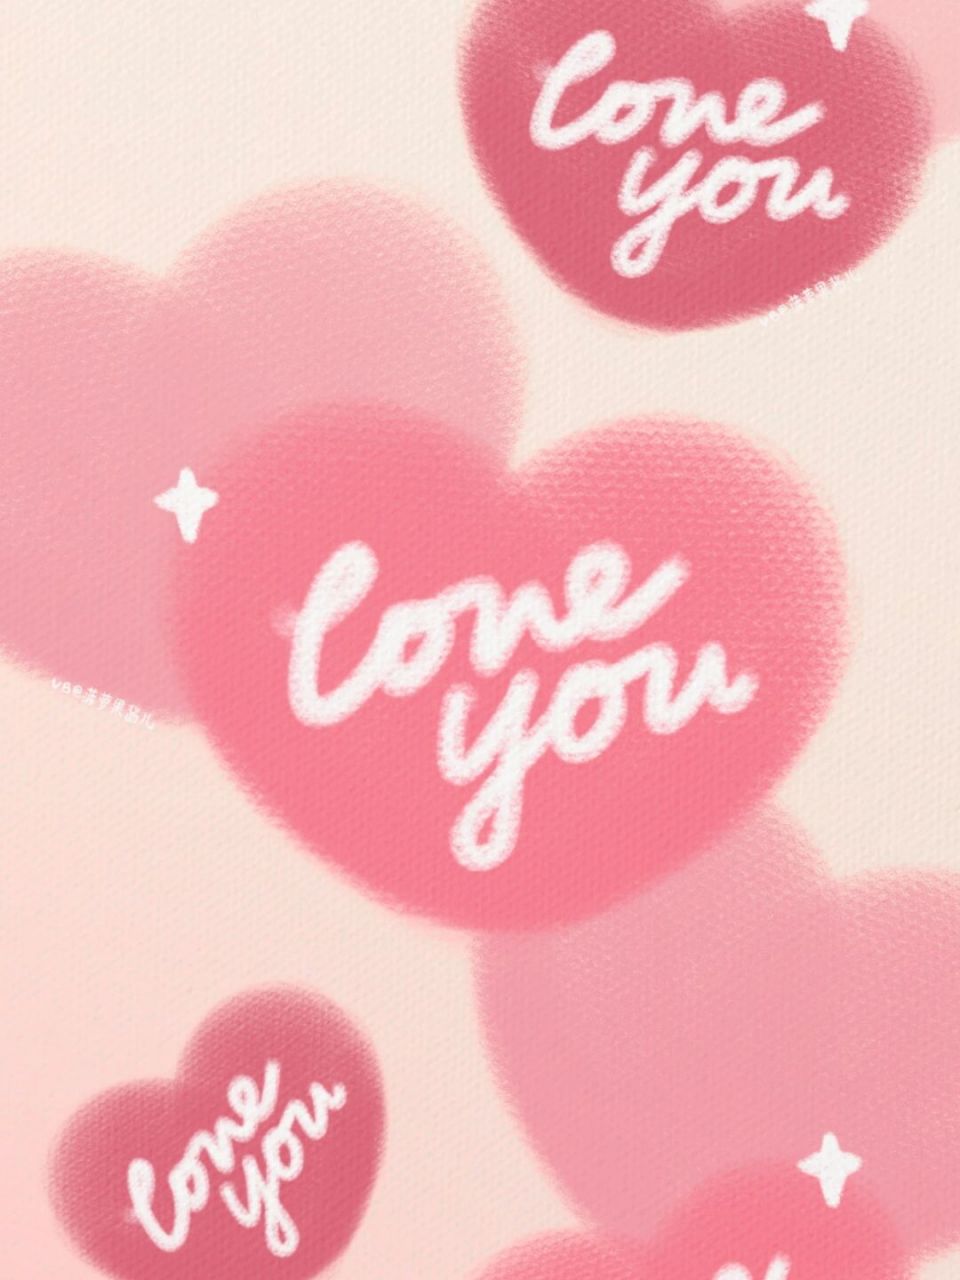 3期95创意粉色表白爱心手机壁纸 以上为本人绘制,9215无授权